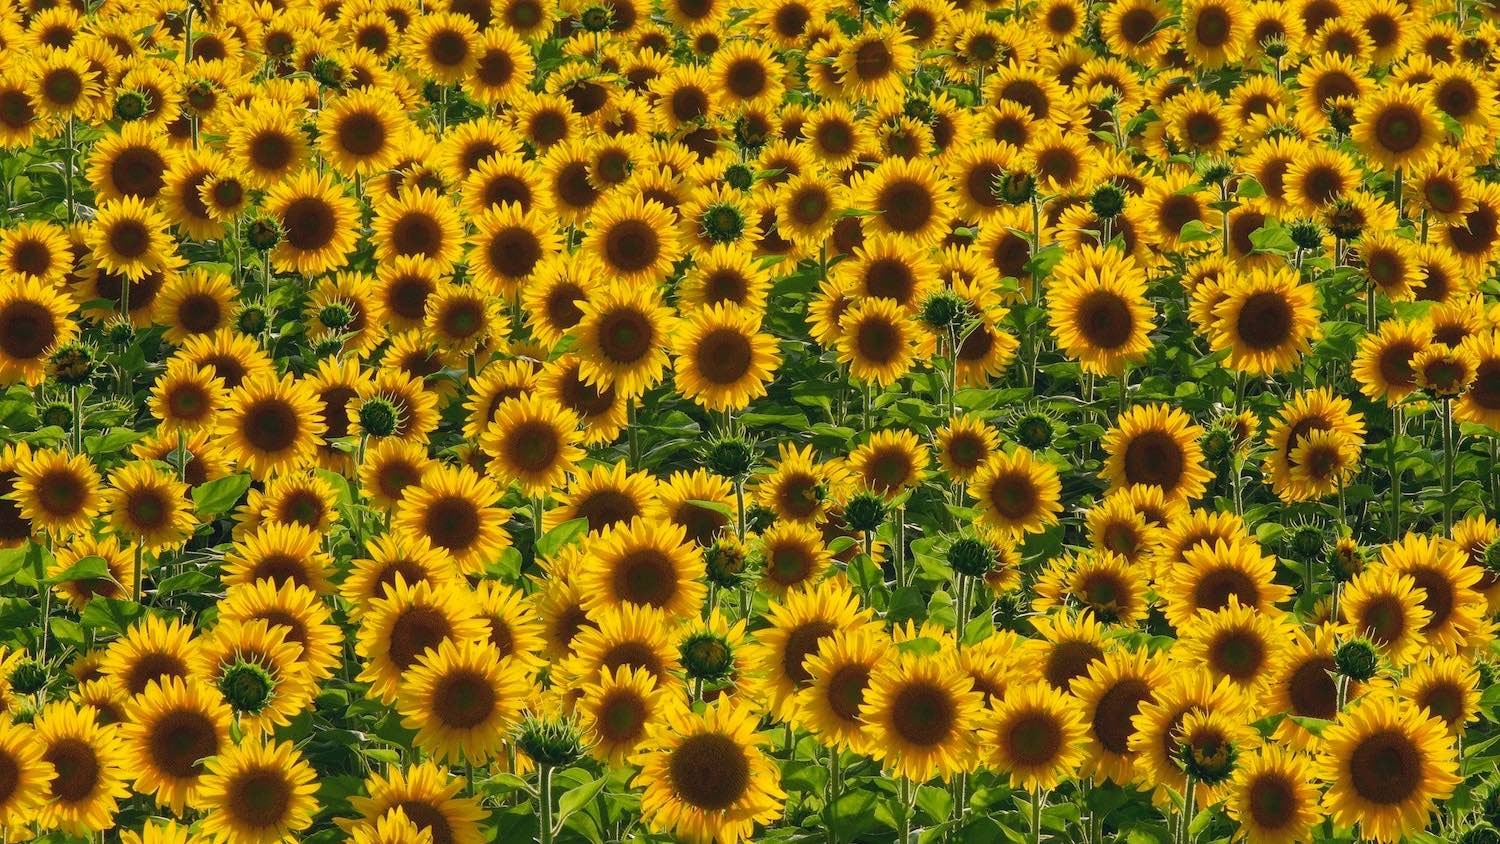 Widescreen Sunflower